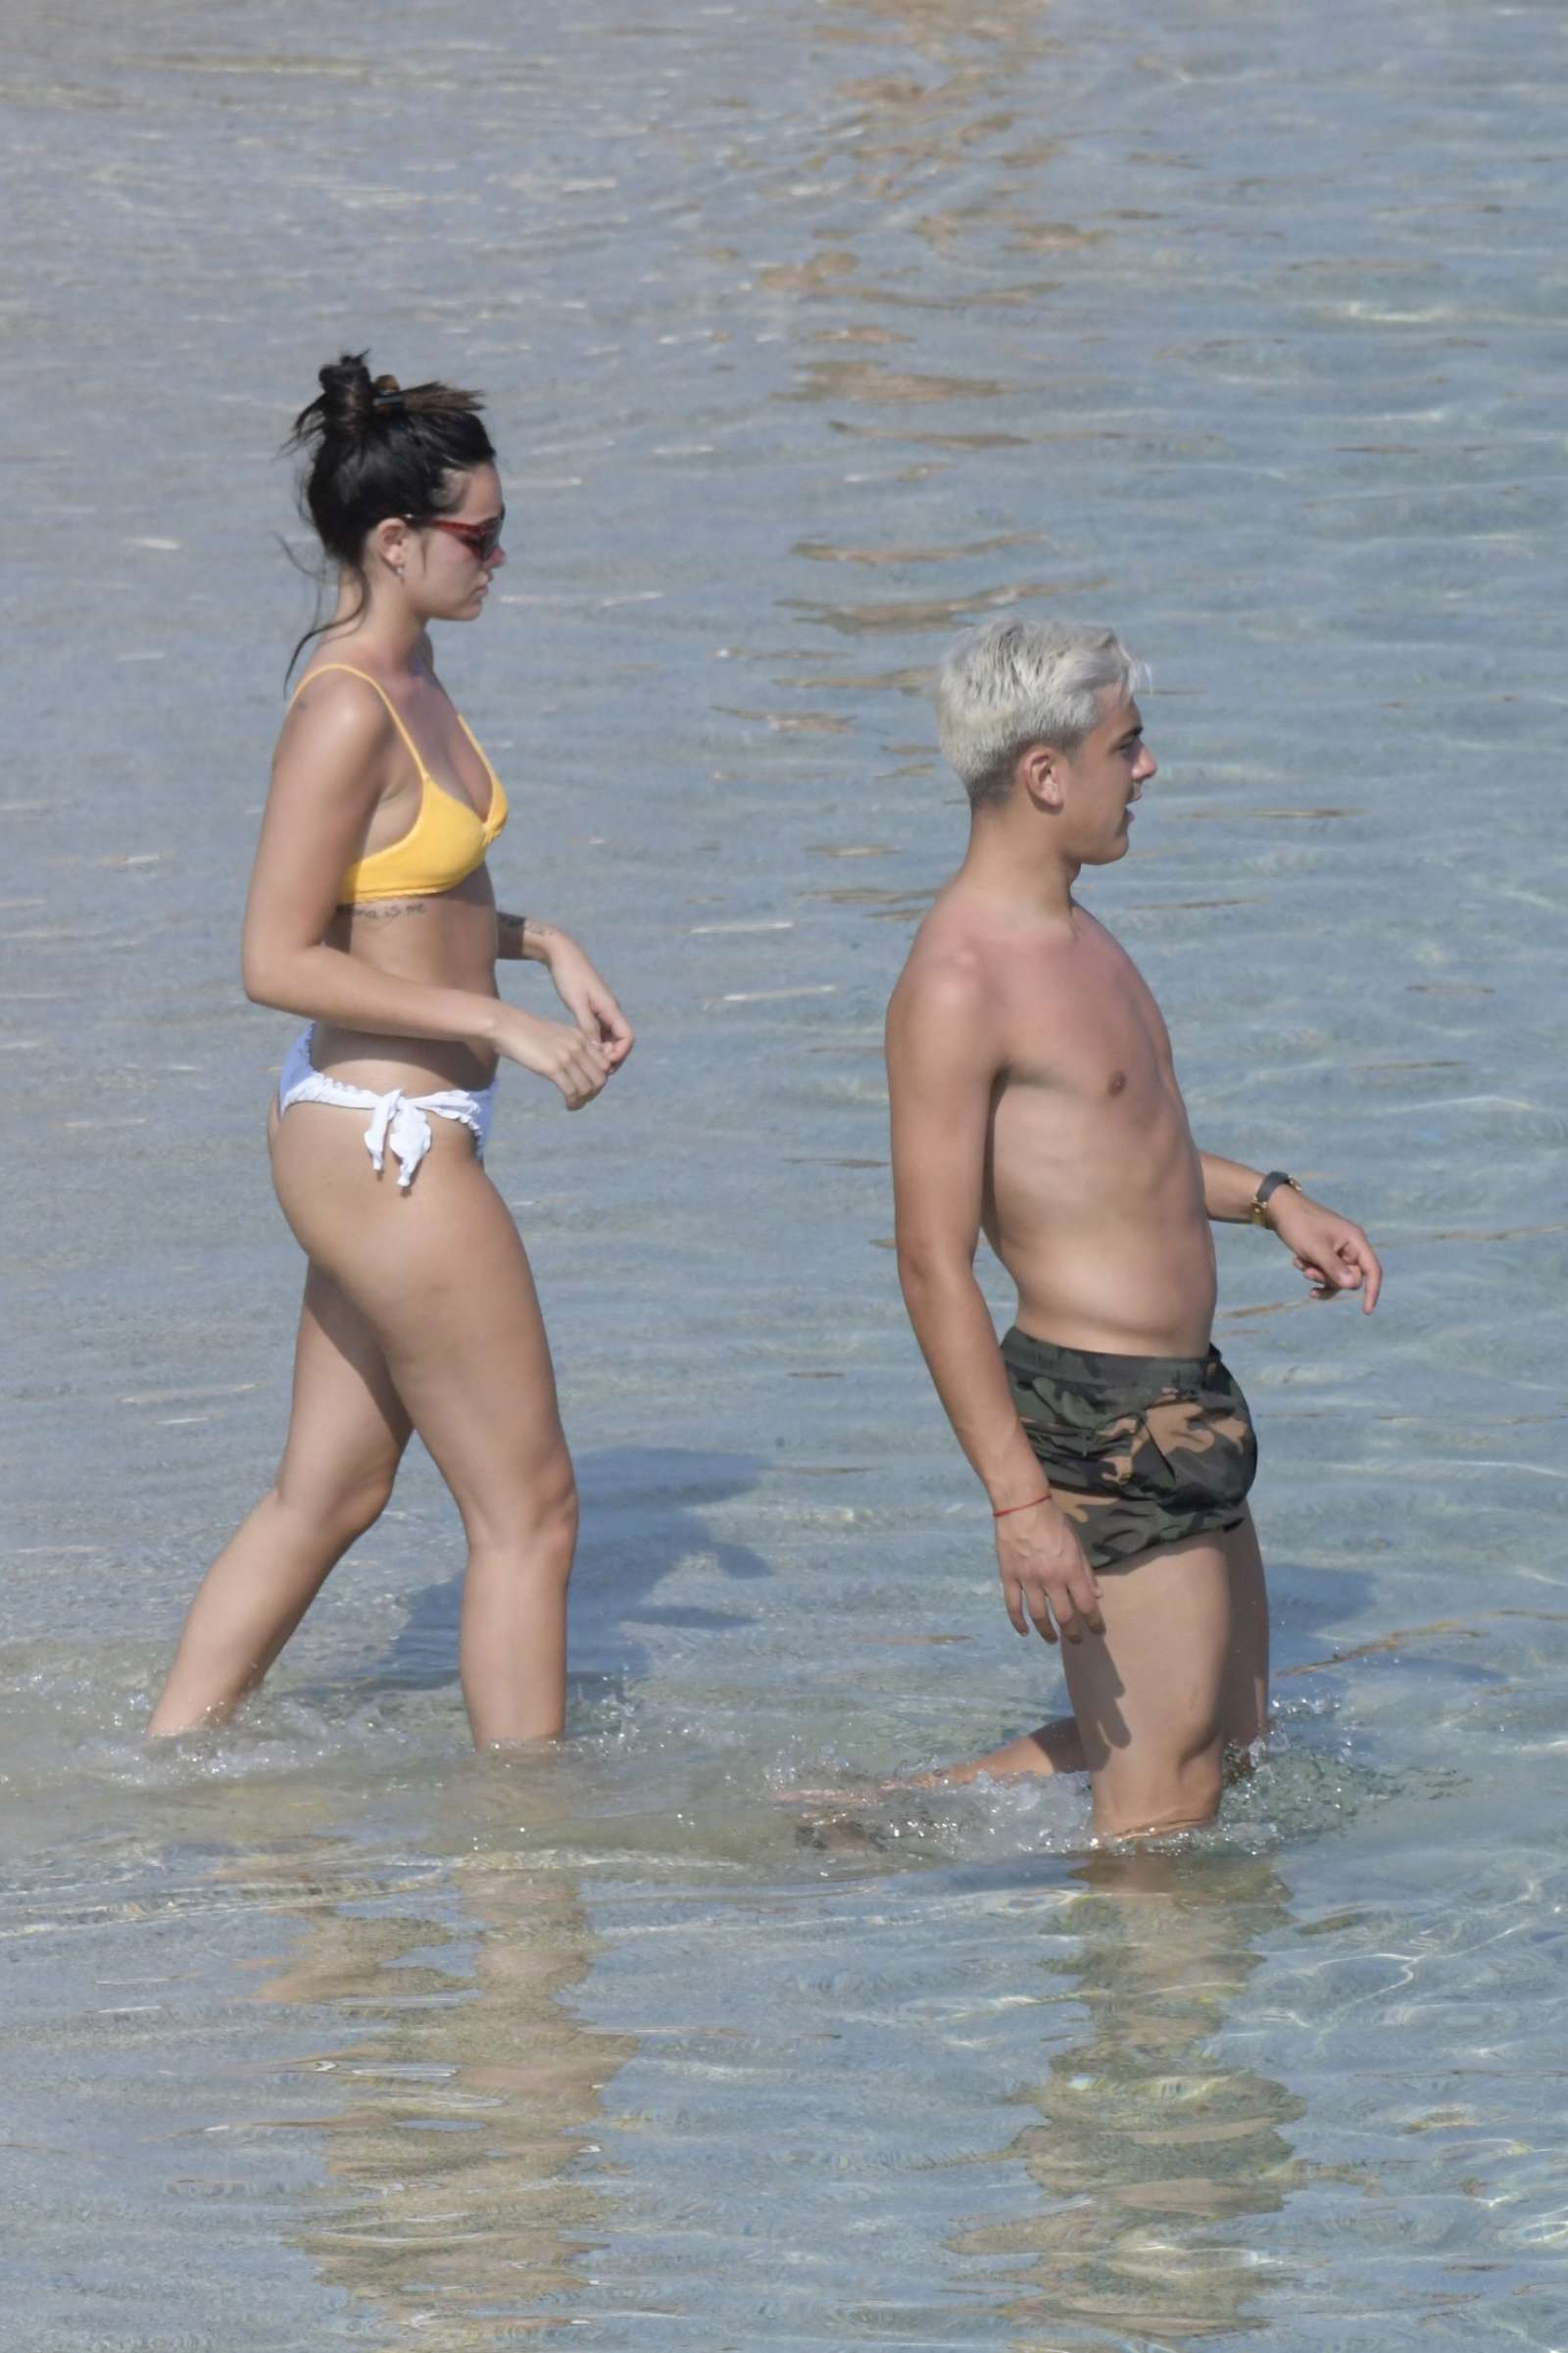 Oriana Sabatini in Bikini at the beach in Mykonos July 28, 2018 68